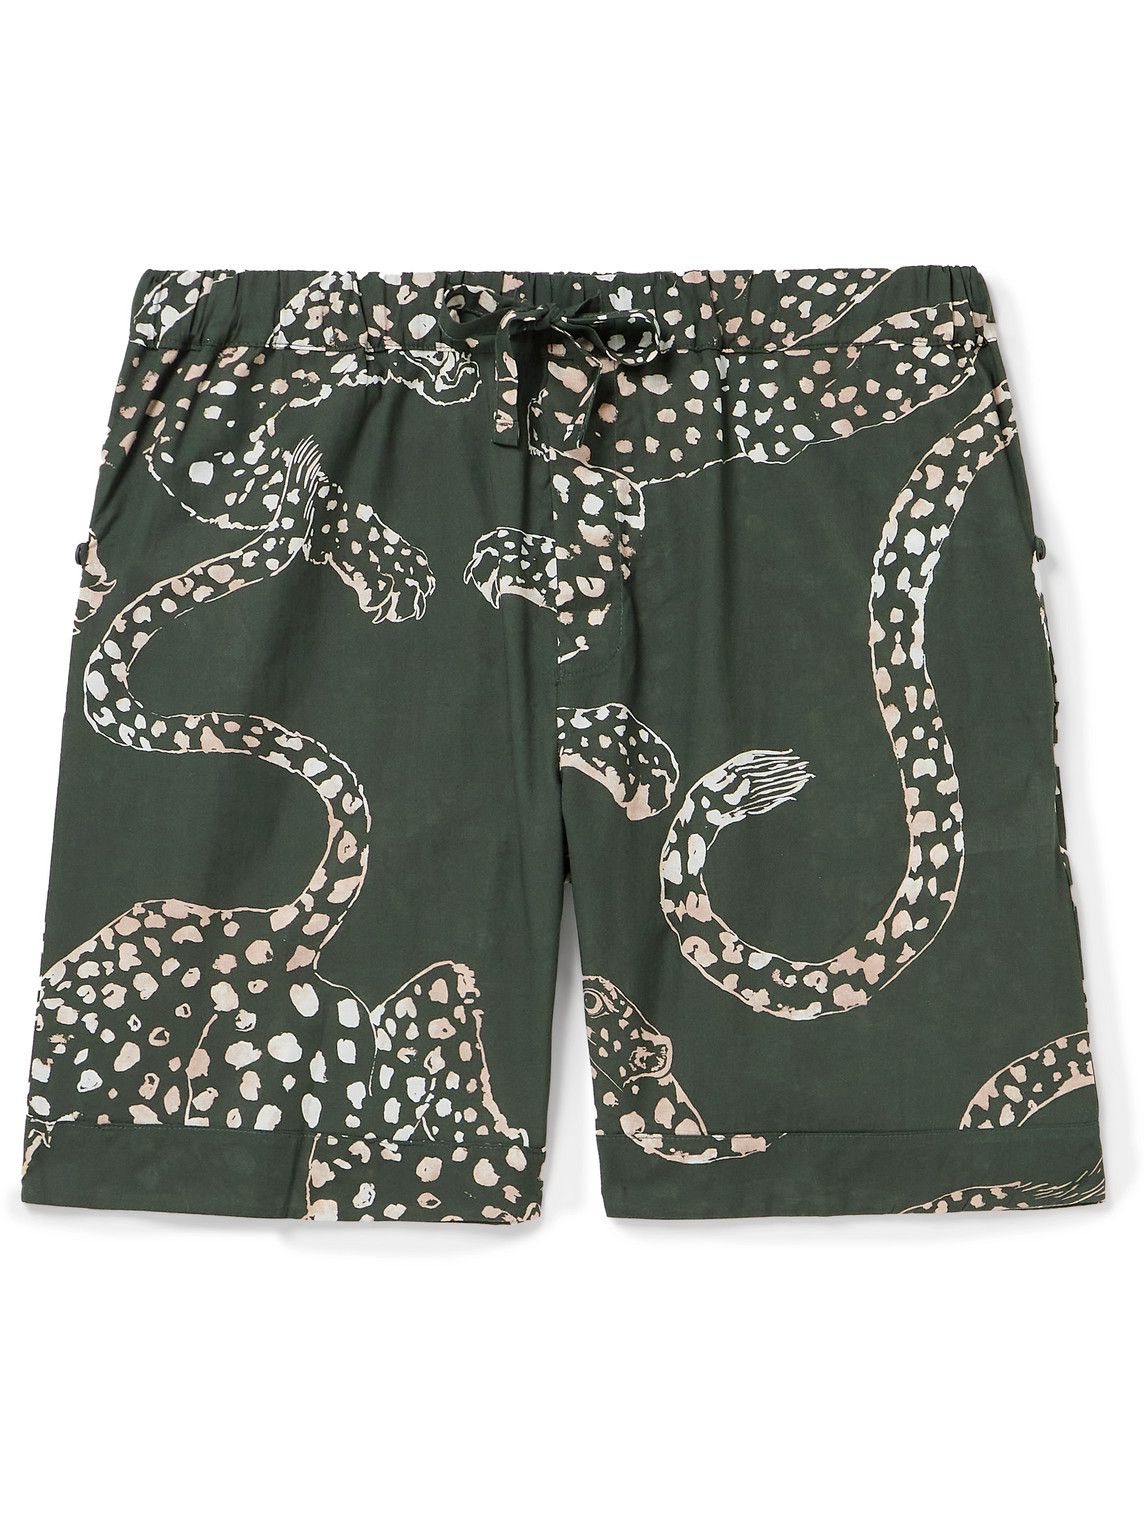 Desmond & Dempsey - Printed Cotton Pyjama Shorts - Men - Green - S von Desmond & Dempsey